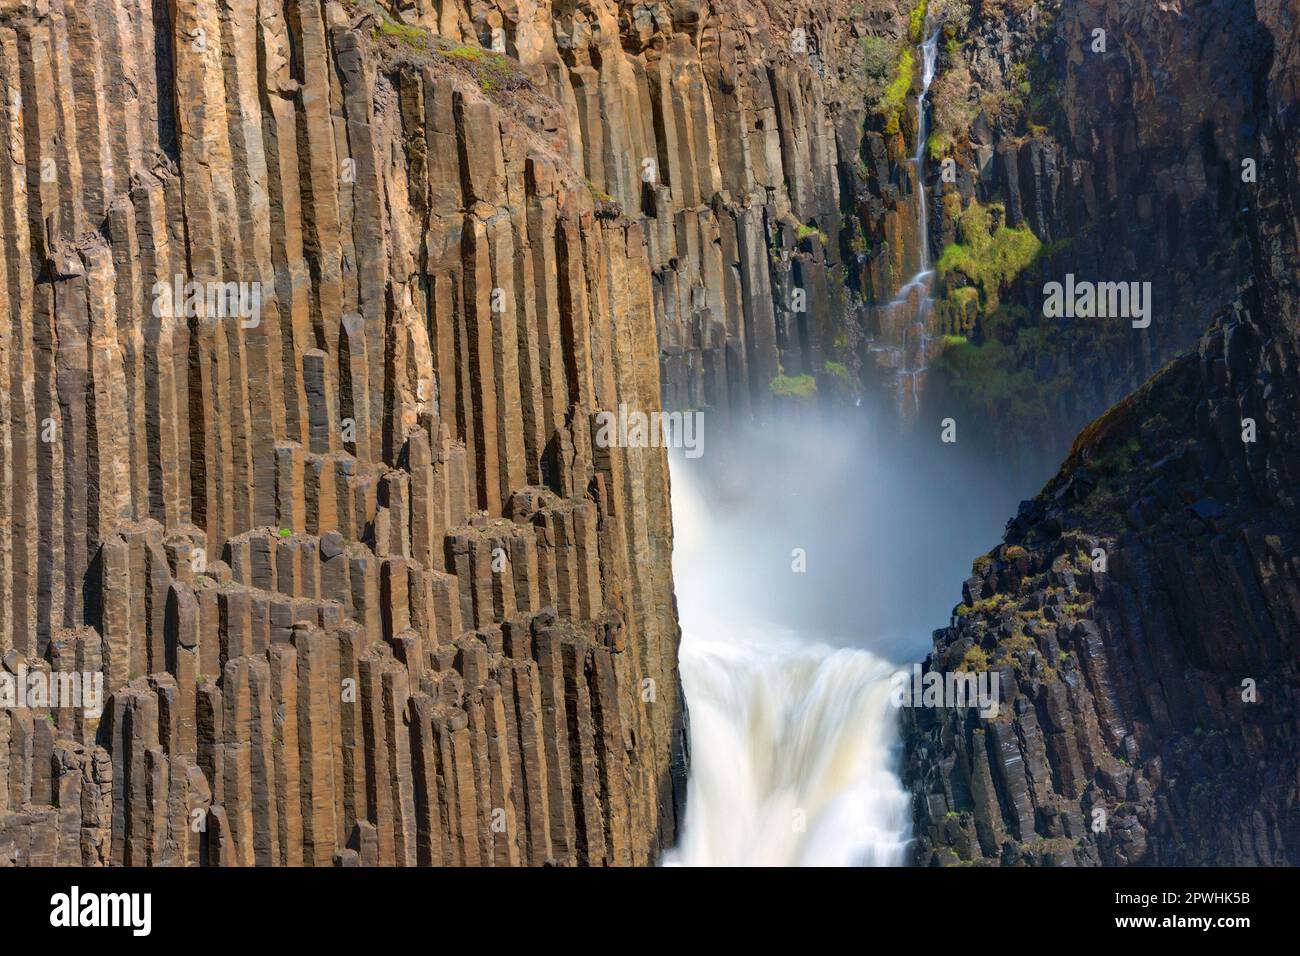 Détail de la cascade de Litlanesfoss en Islande avec ses colonnes de basalte Banque D'Images